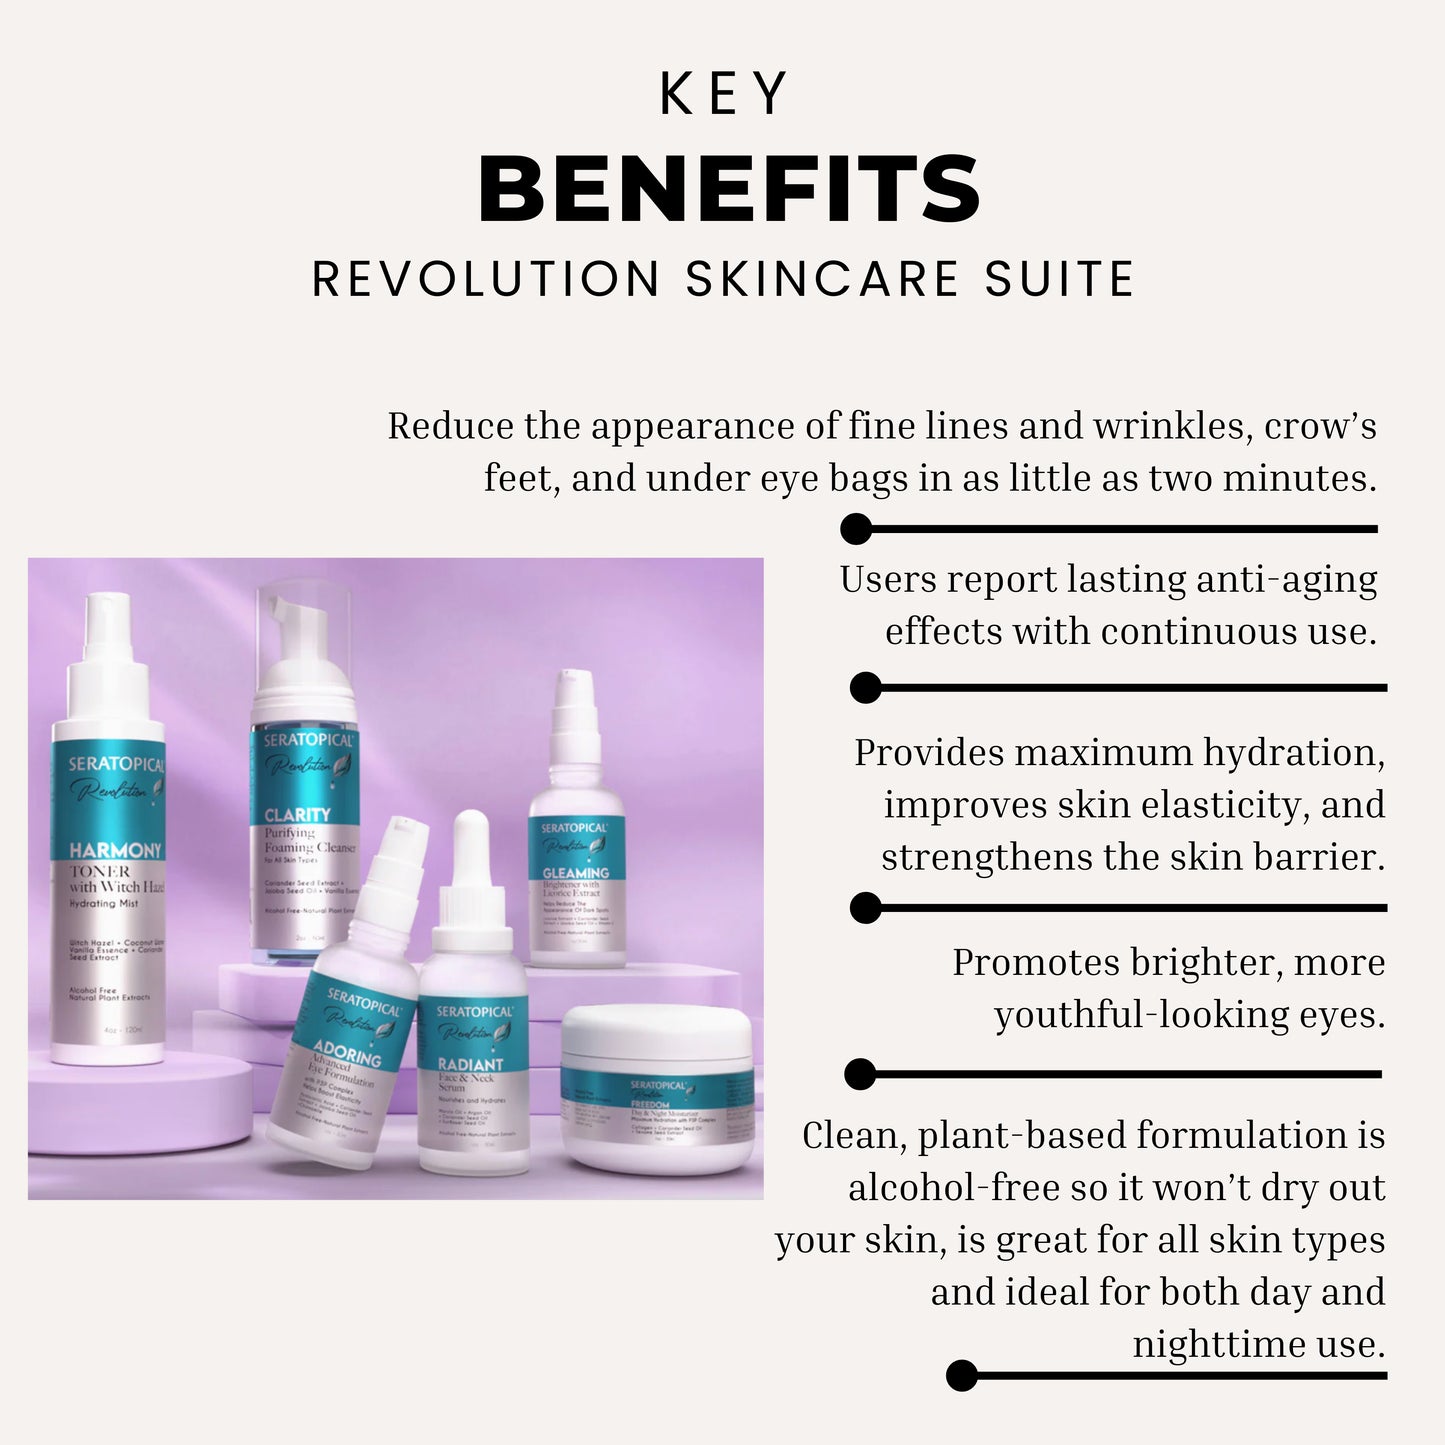 Revolution Skincare Suite